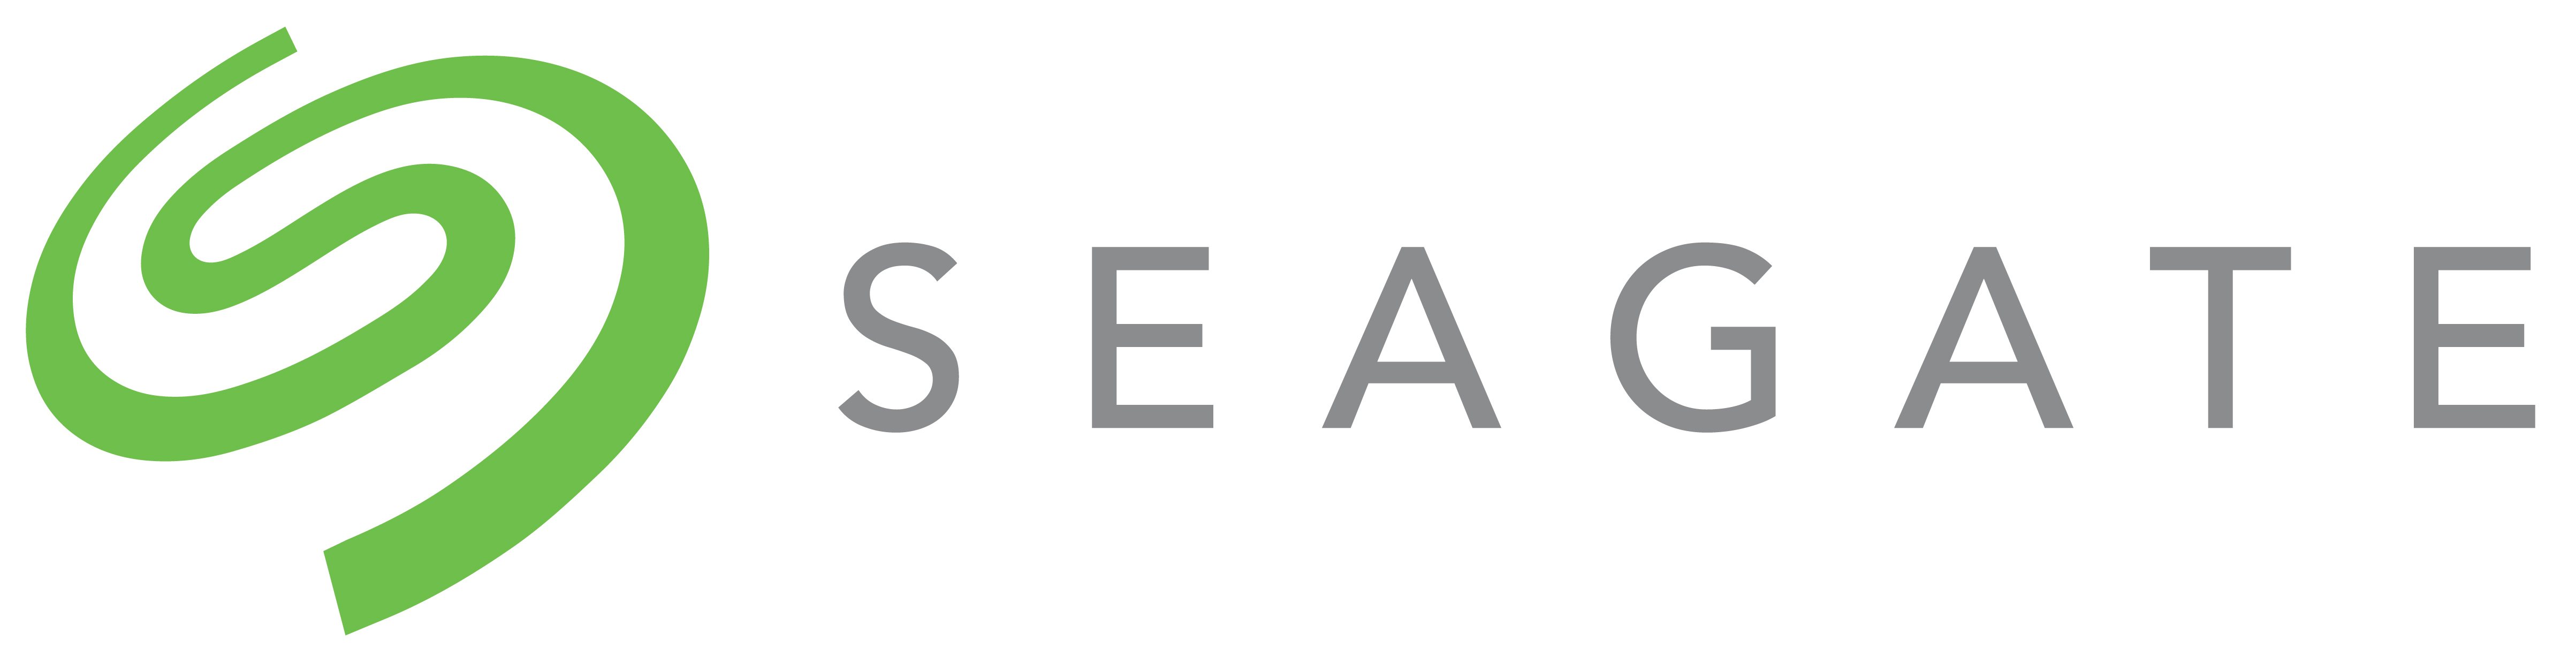 Micron, Seagate Announce Strategic Alliance